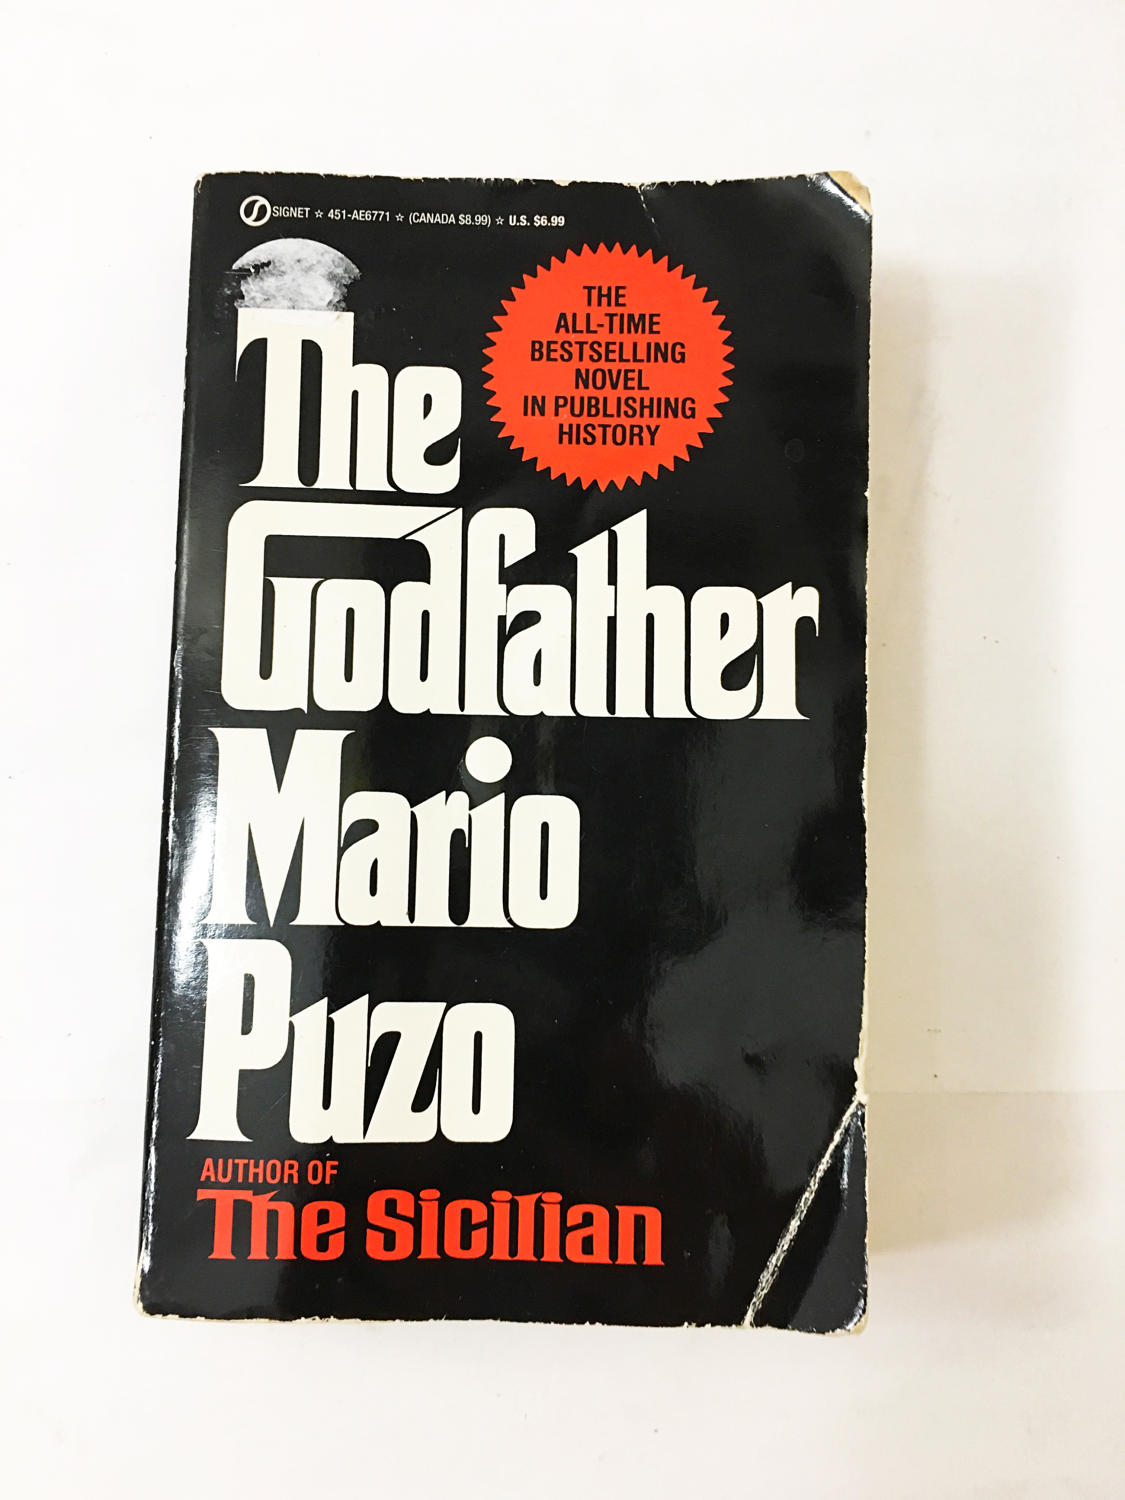 The Godfather book. Mario Puzo. 1978 paperback edition. Classic American fiction! Don Corleone, mafia, crime boss, crime